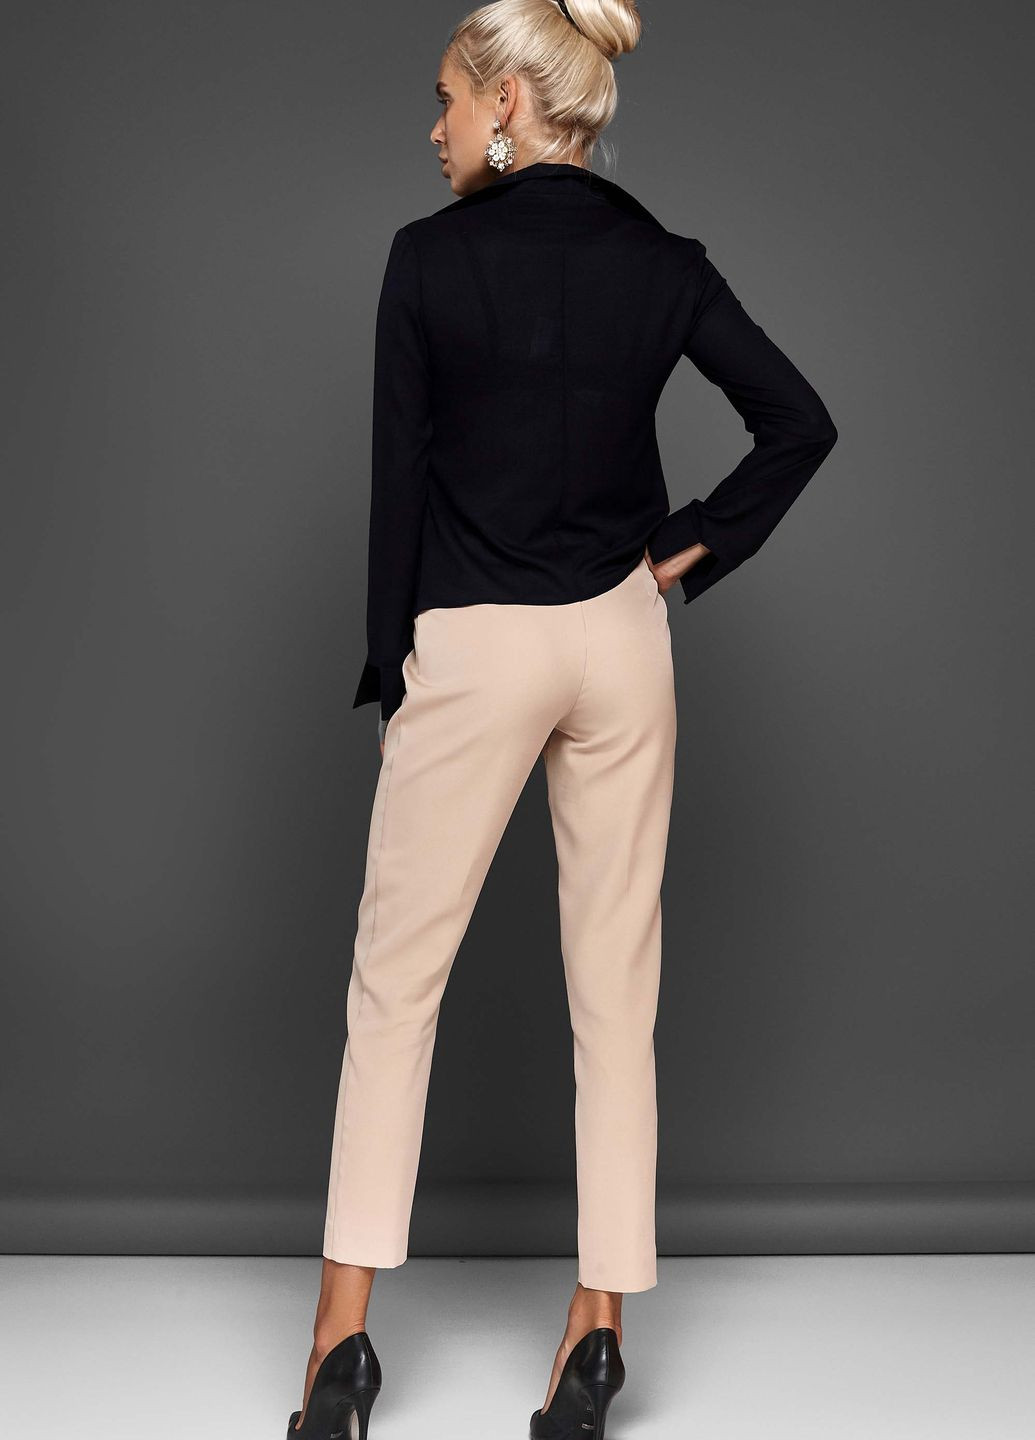 Черная демисезонная классическая блуза с оригинальным разрезом спереди Jadone Fashion